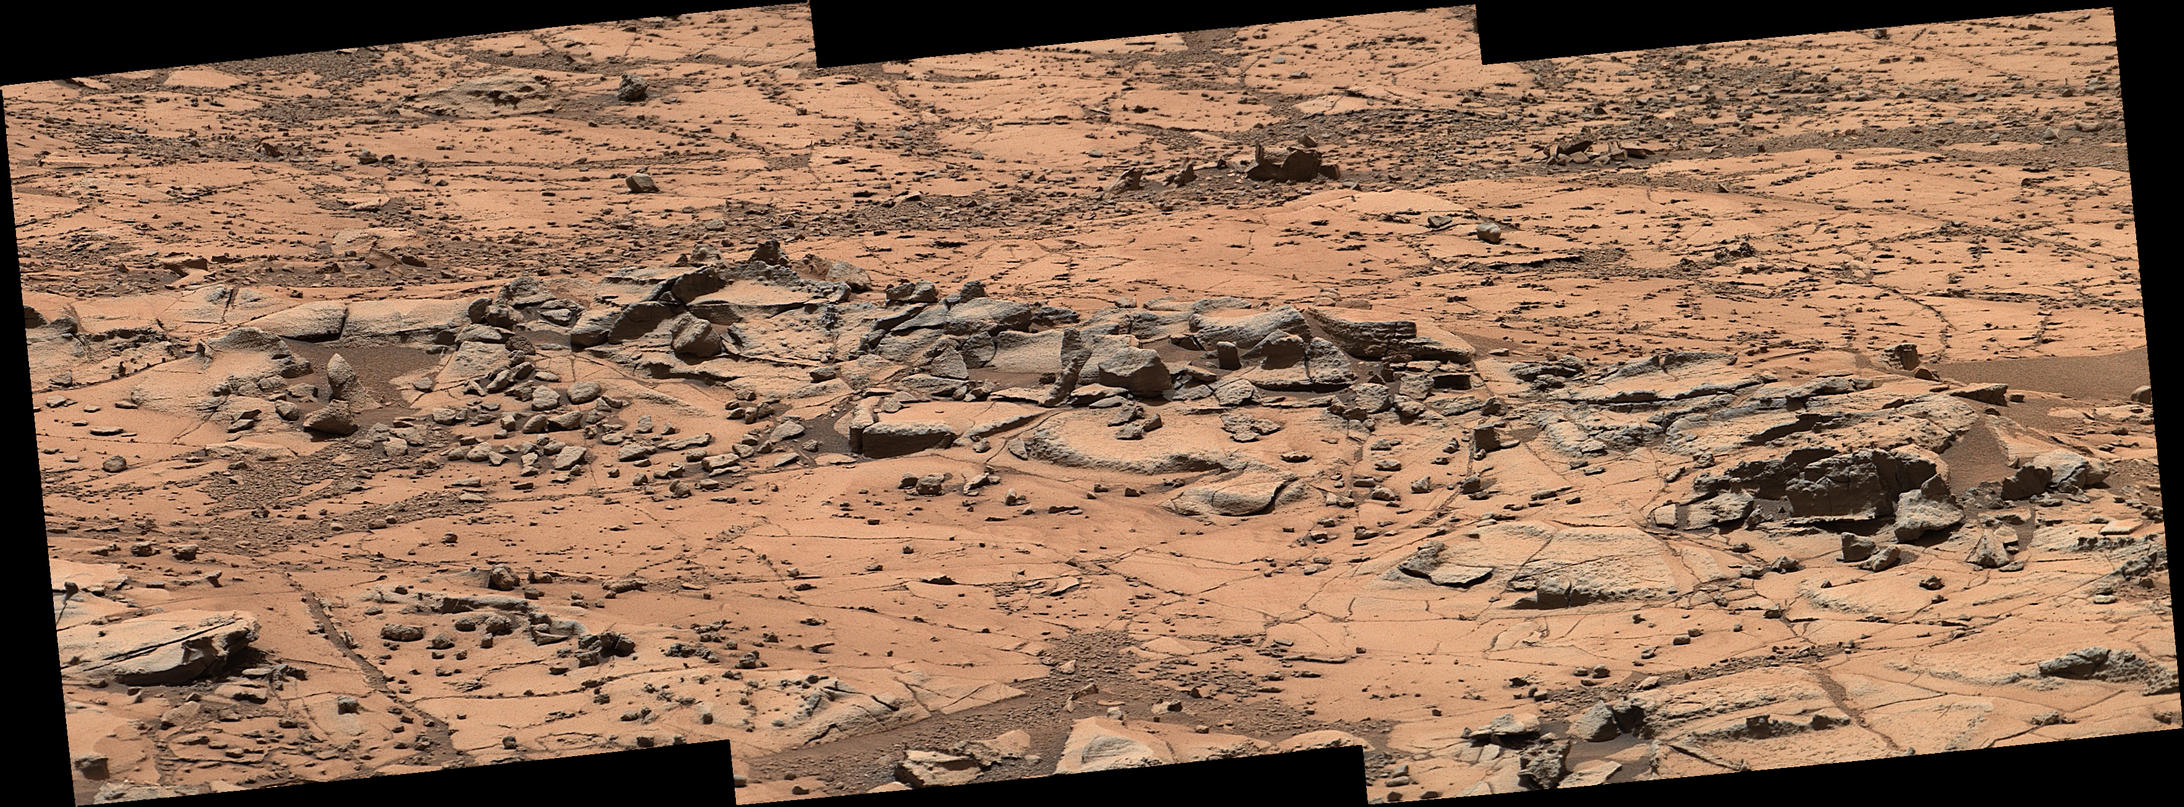 Erosion Resistance at 'Pink Cliffs' at Base of Martian Mount Sharp